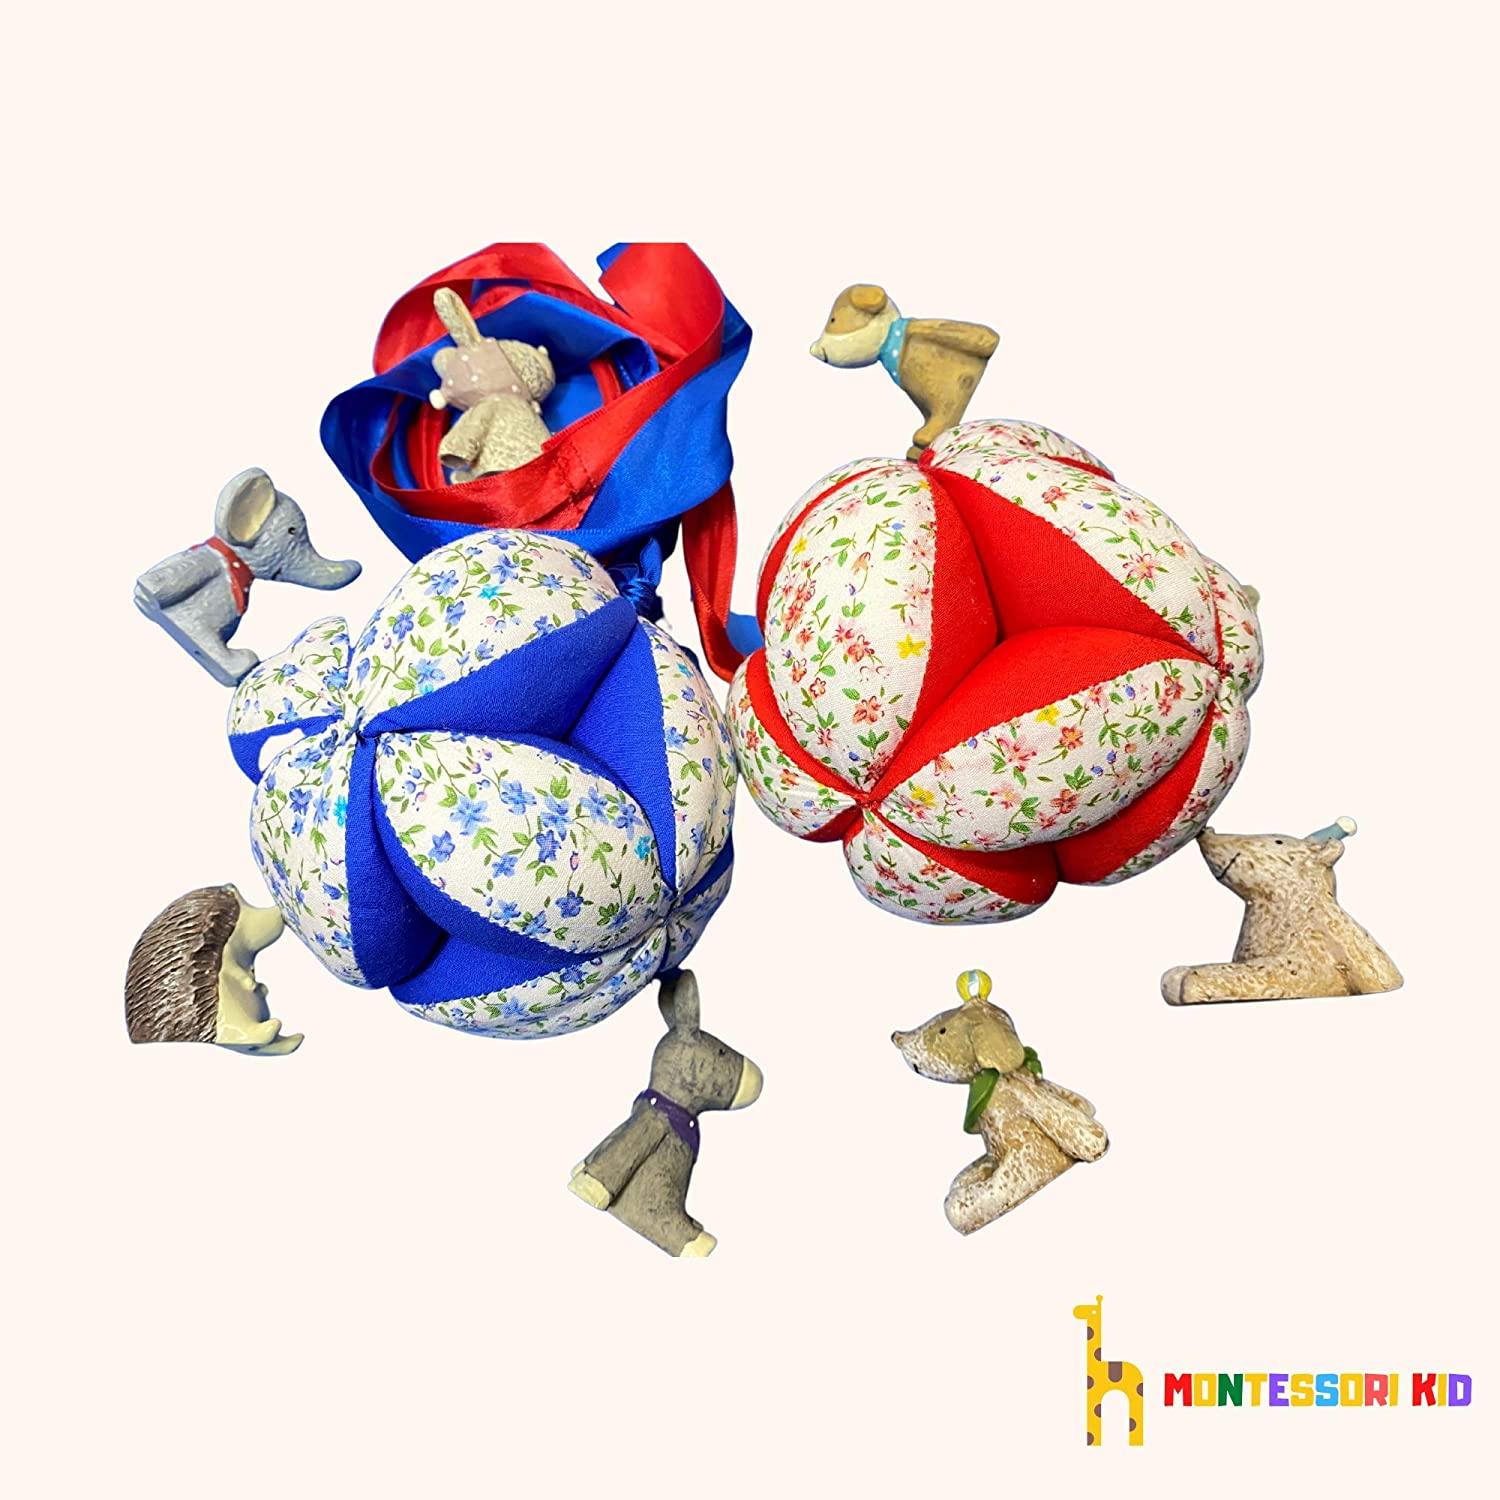 Montessori Ball Gripper Ball Puzzle Ball (red/blue) - Montessori kid shop